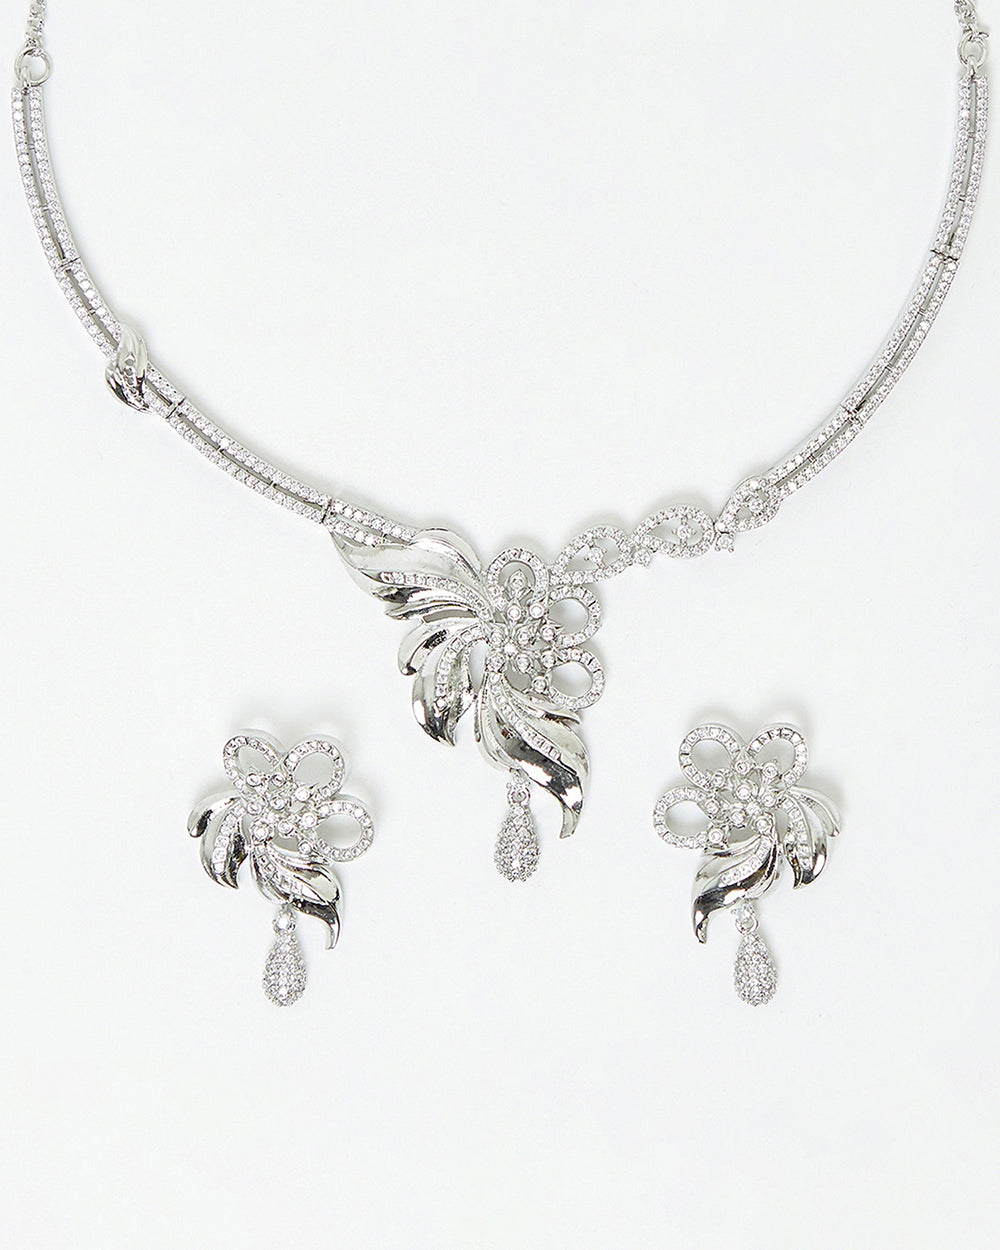 Sparkling Elegance Silver Plated Drop Necklace Set